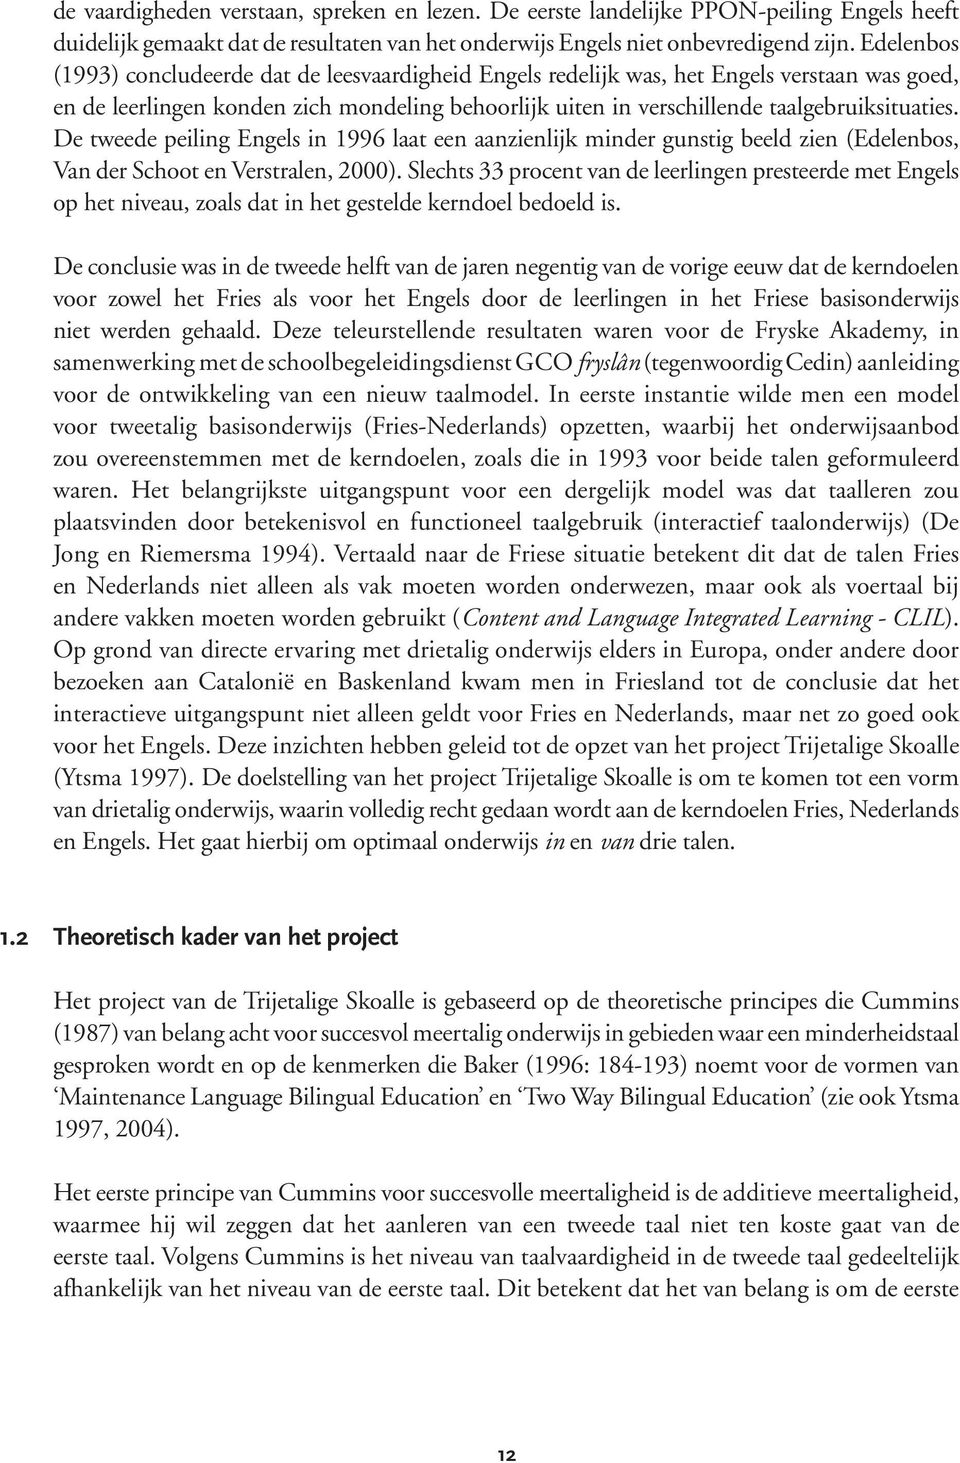 De tweede peiling Engels in 1996 laat een aanzienlijk minder gunstig beeld zien (Edelenbos, Van der Schoot en Verstralen, 2000).